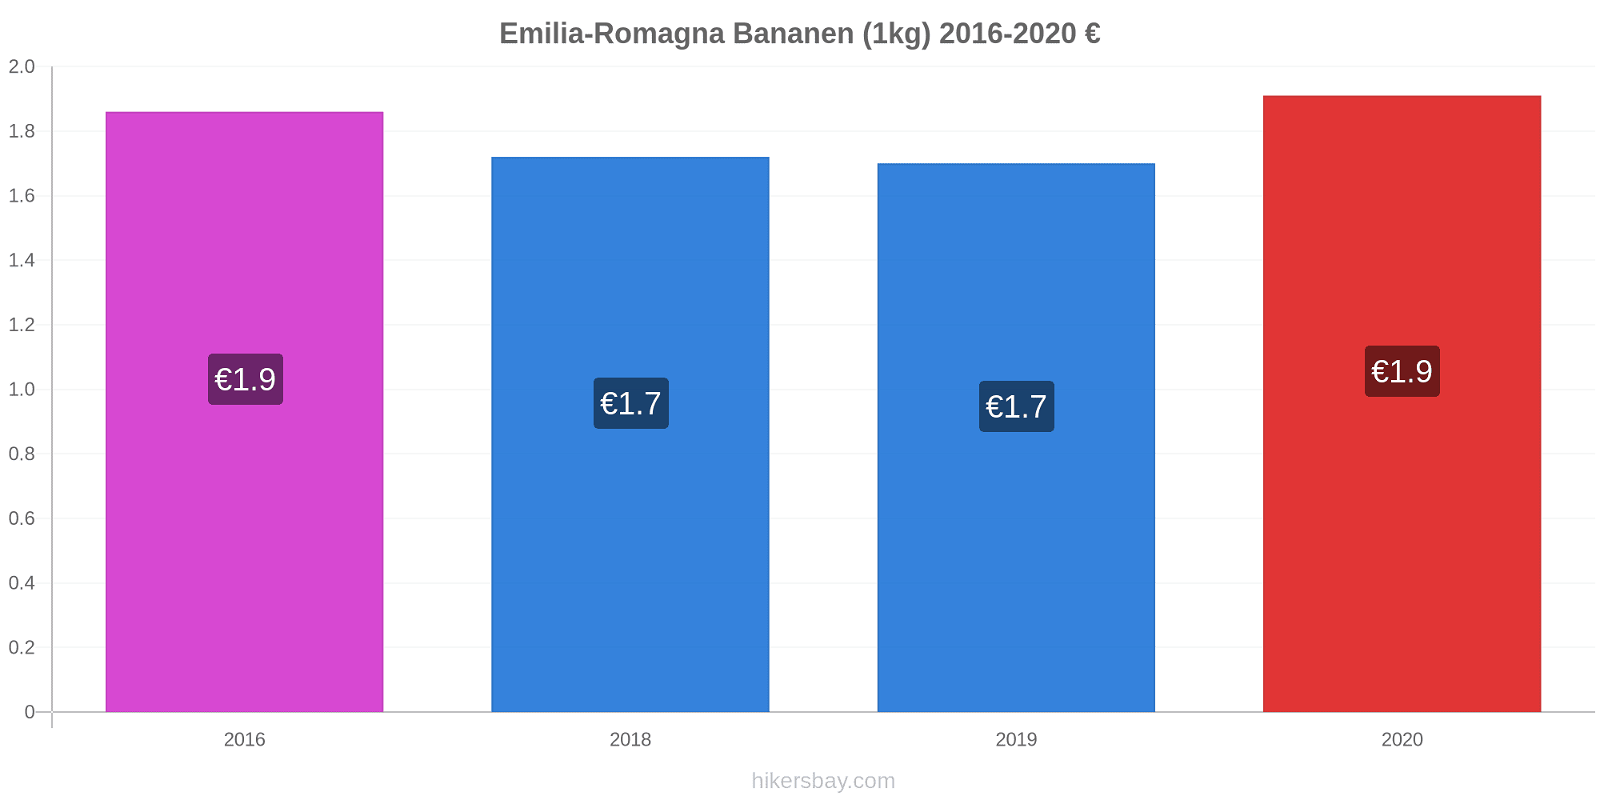 Emilia-Romagna prijswijzigingen Banaan (1kg) hikersbay.com